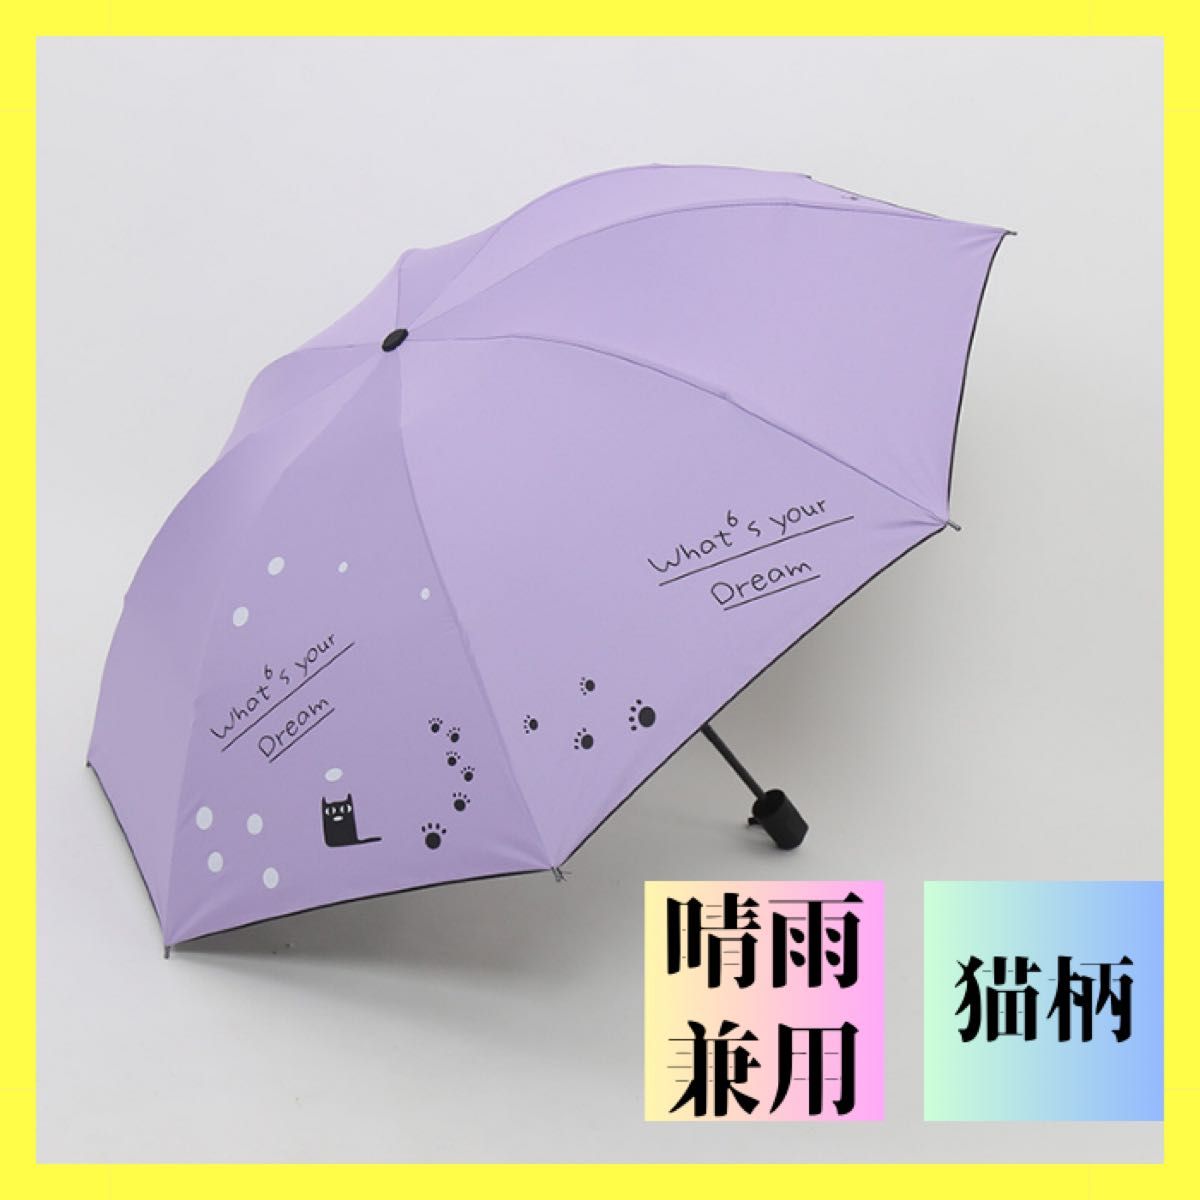 折りたたみ傘 猫 ネコ柄 晴雨兼用 梅雨対策 可愛い 折り畳み傘 日傘 雨傘 紫外線対策